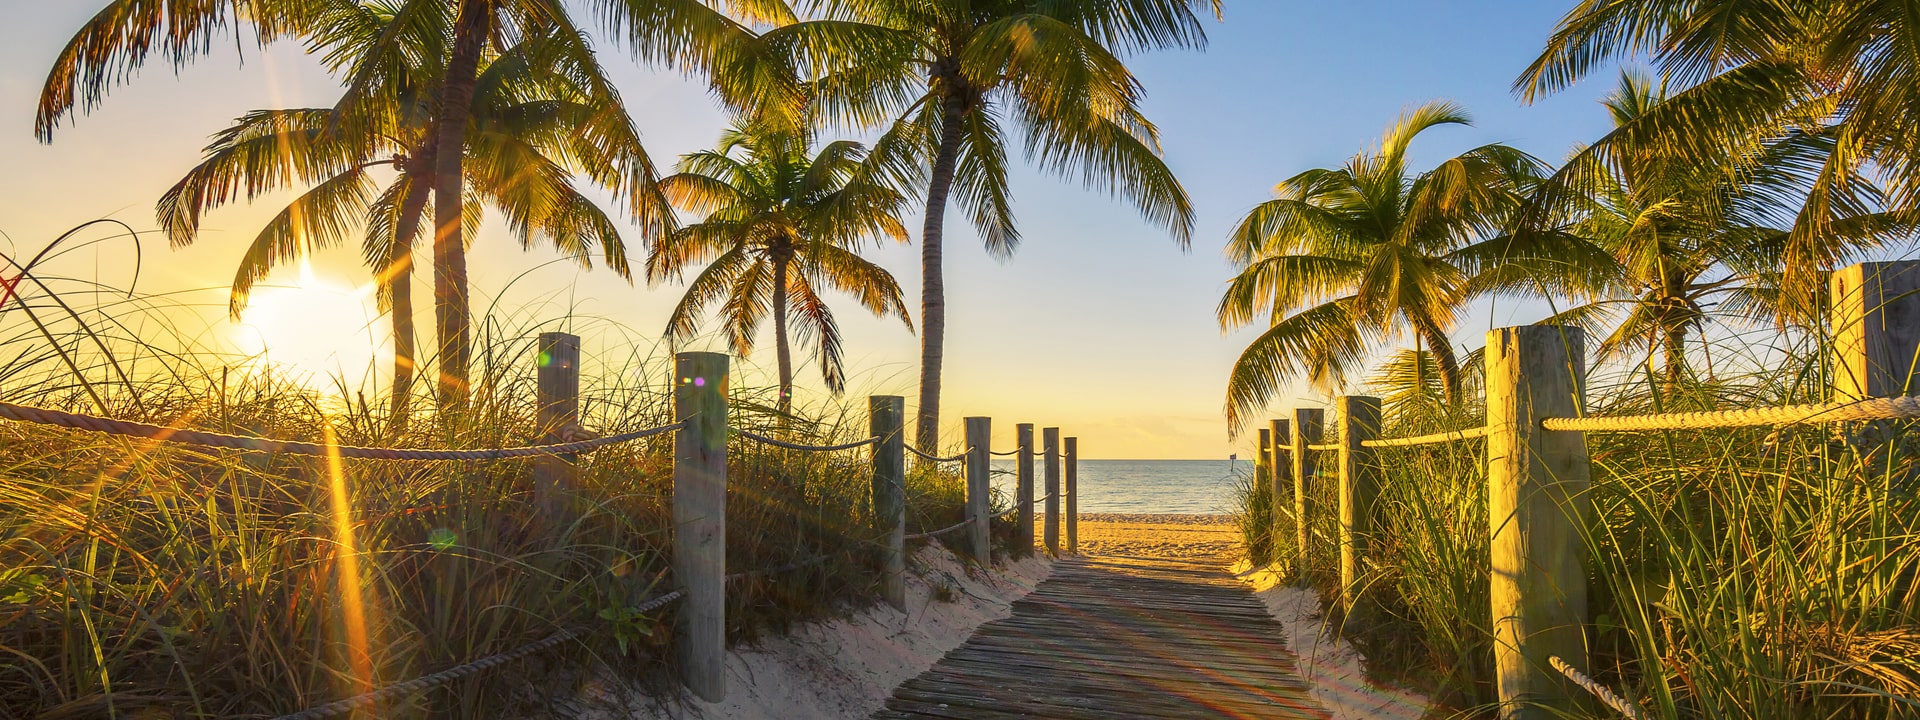 Miami & The Florida Keys